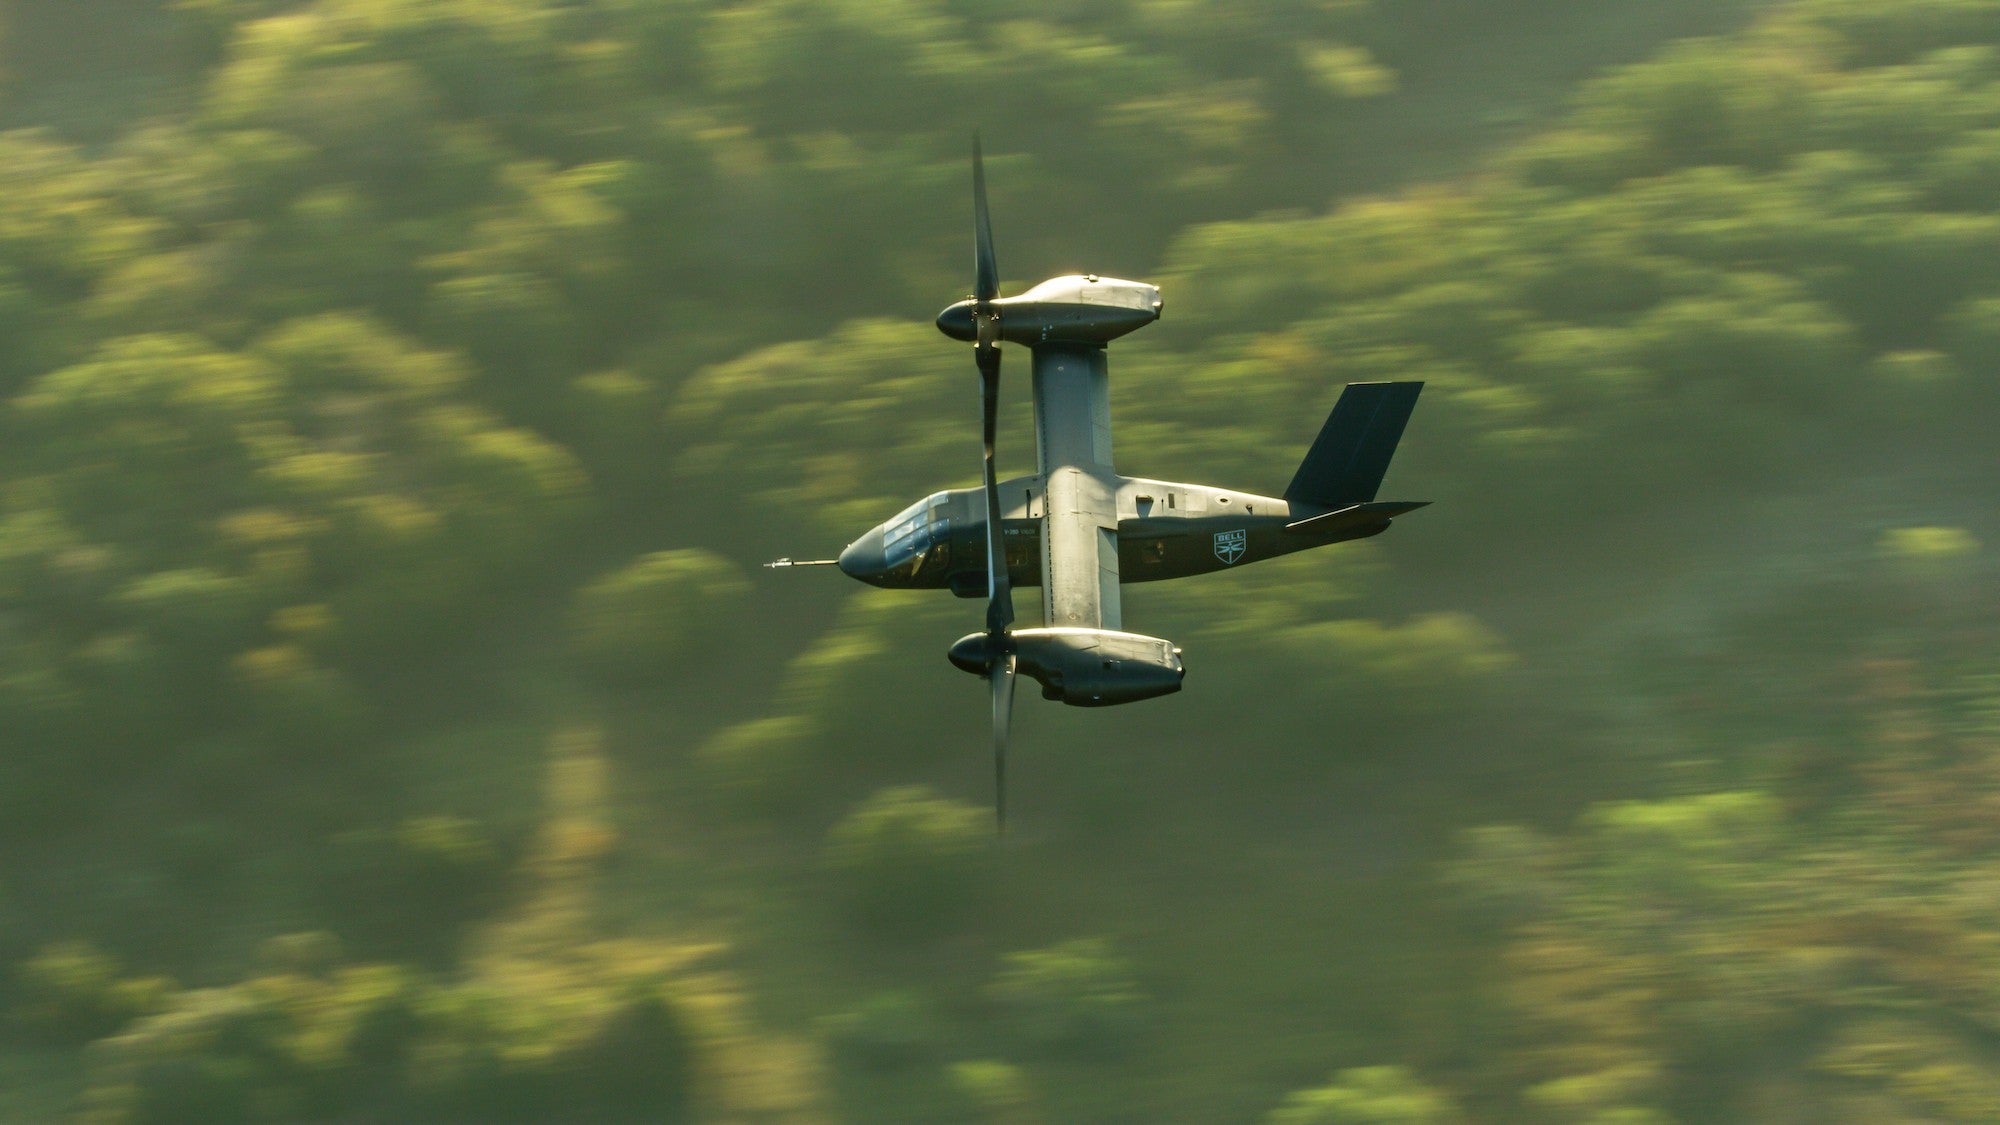 A V-280 Valor flying over a forest.